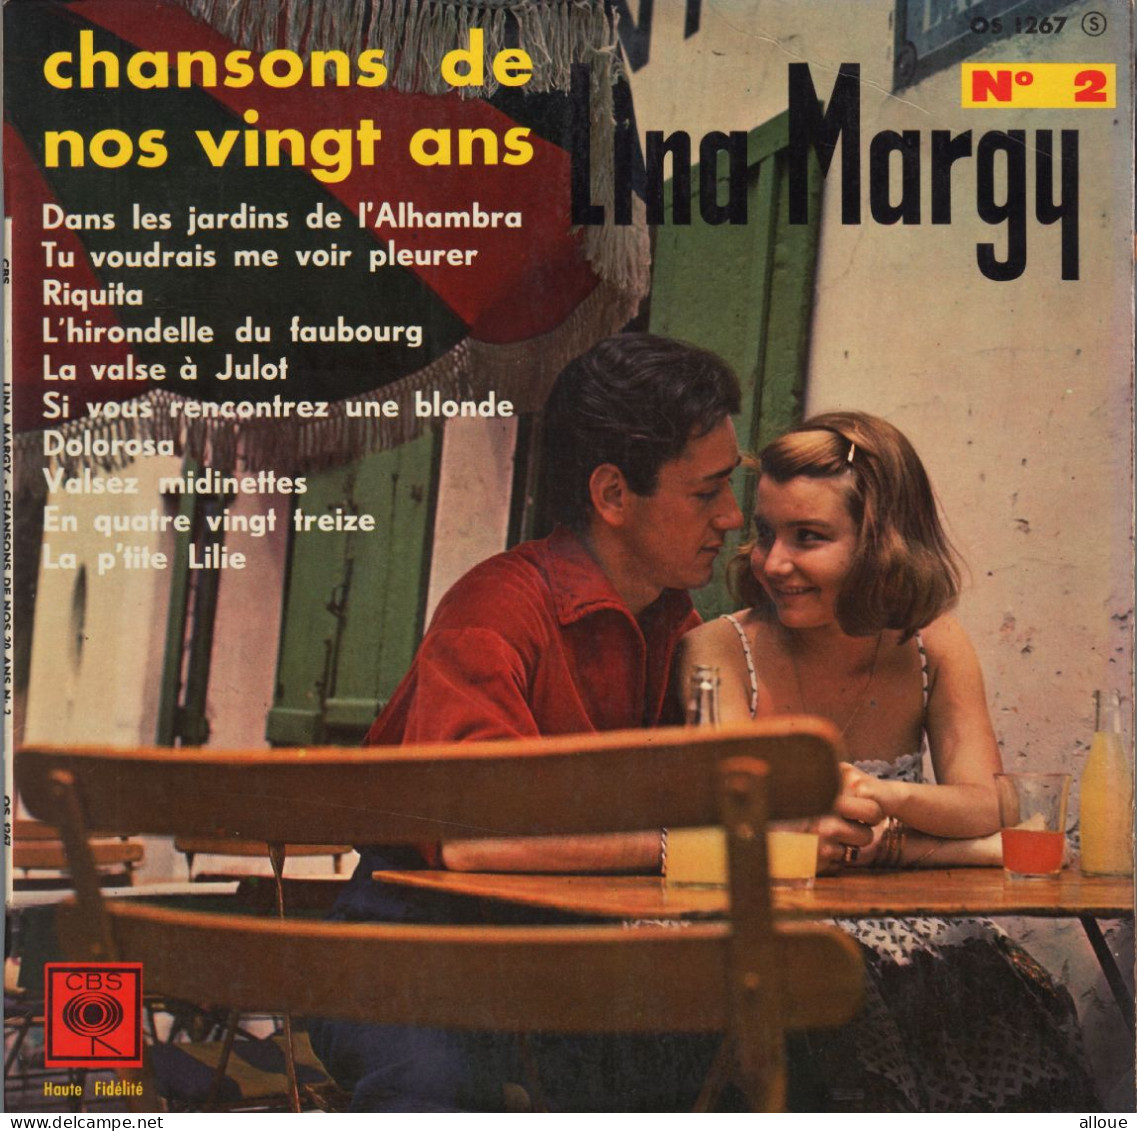 LINA MARGY - FR 25 CM VINYLE - CHANSONS DE NOS VINGT ANS N° 2 - Autres - Musique Française